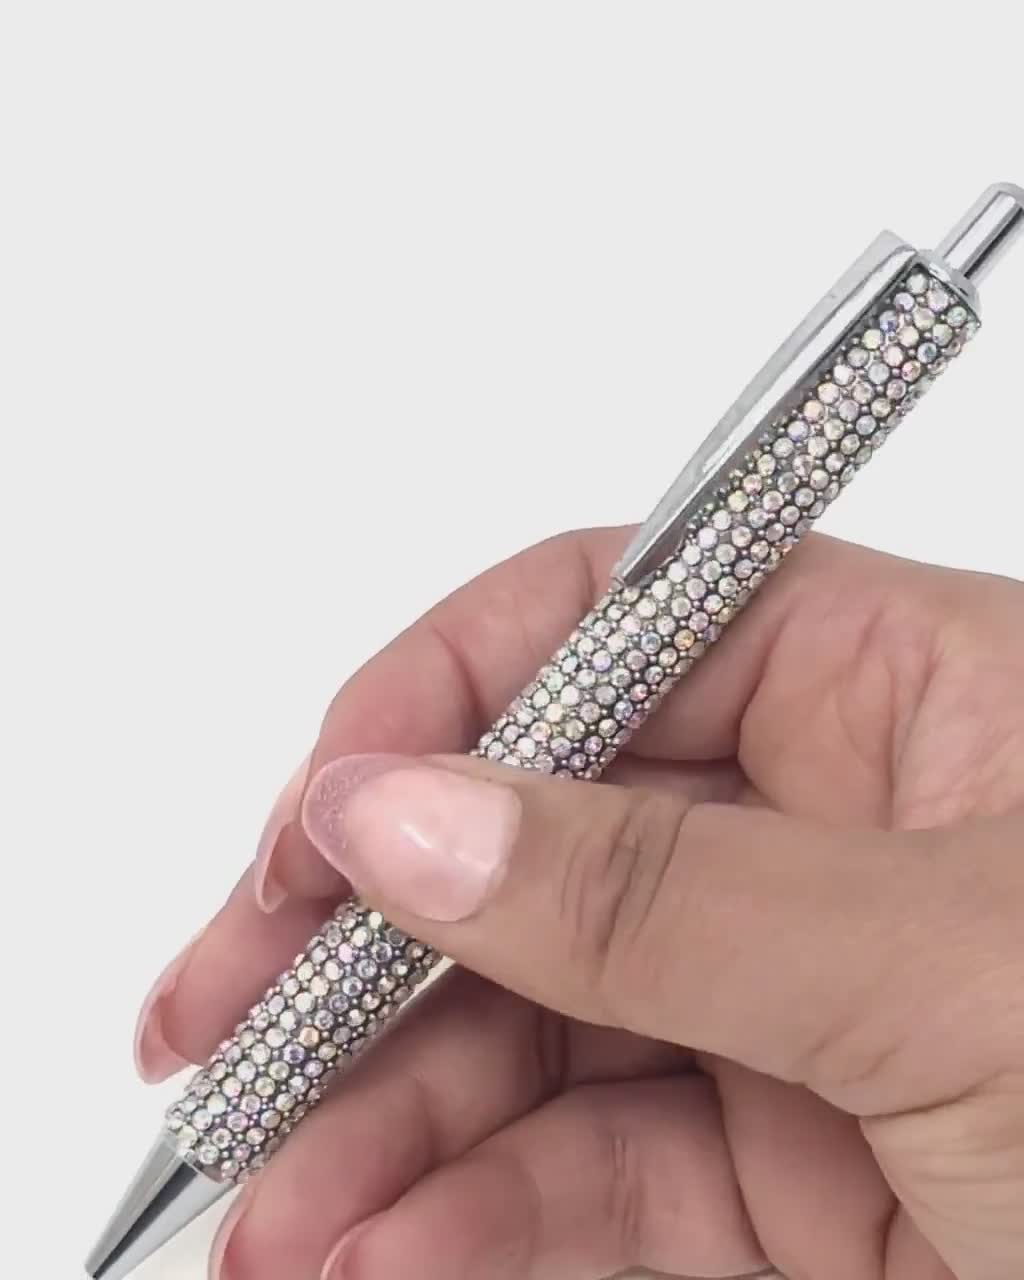 Ballpoint-pen with Diamond Shape Push Button - Buy ballpointpen